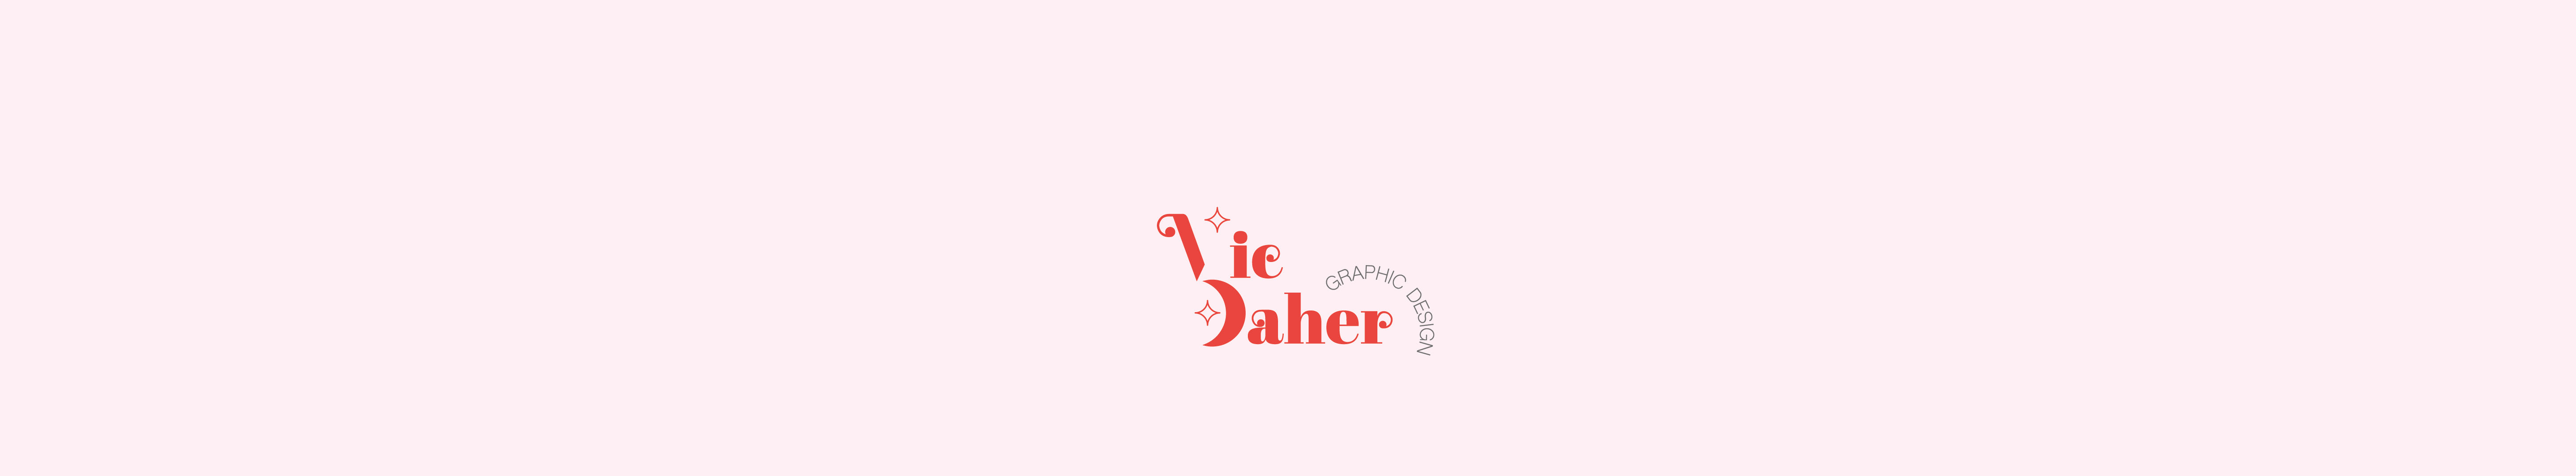 Баннер профиля Victoria Daher